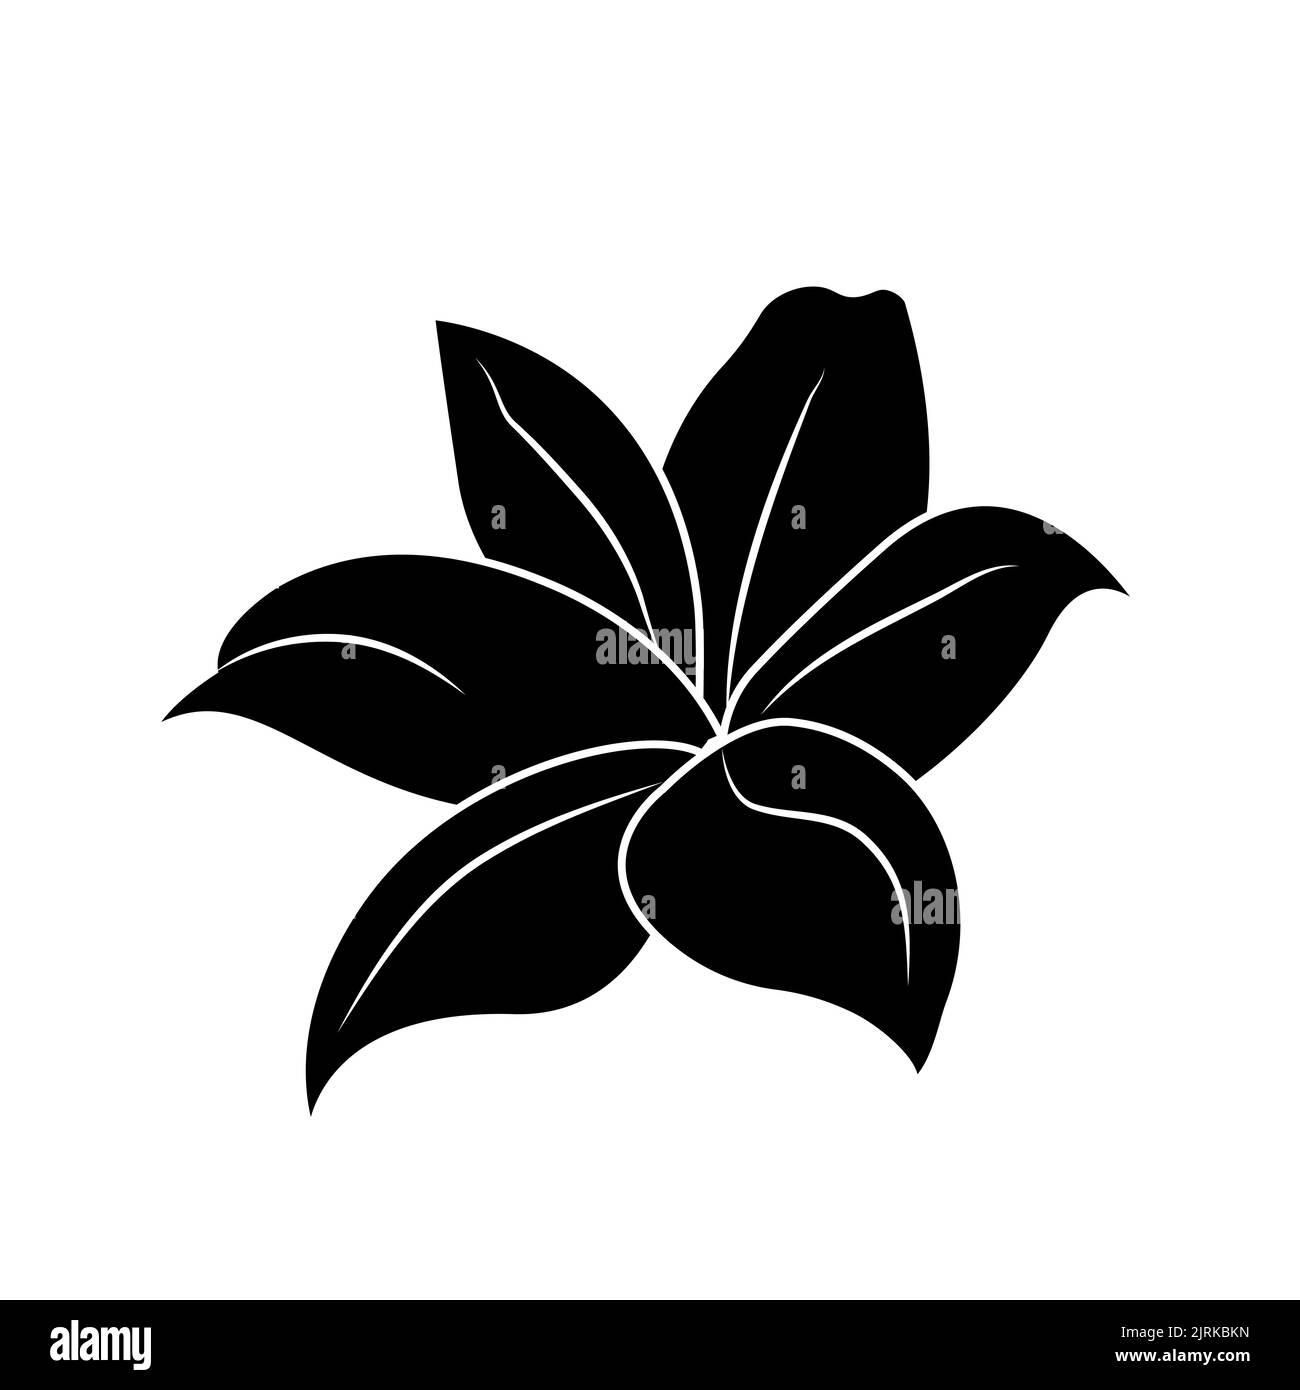 Silhouette de Lily, logo ou tatouage, fleur décorative isolée sur fond blanc. Illustration florale, nature. Vecteur Illustration de Vecteur